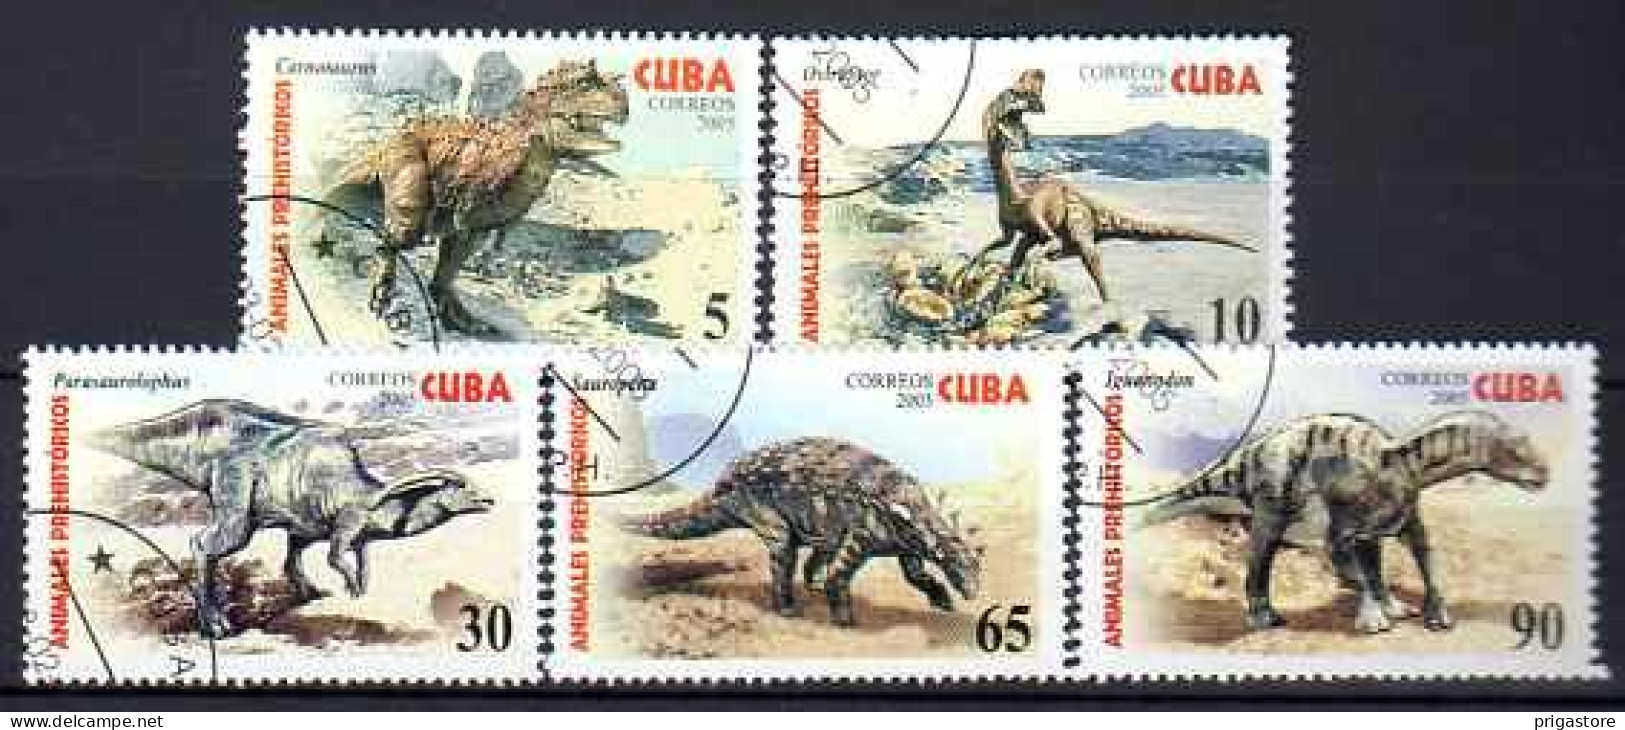 Cuba 2005 Animaux Préhistoriques (10) Yvert N° 4225 à 4229 Oblitéré Used - Oblitérés